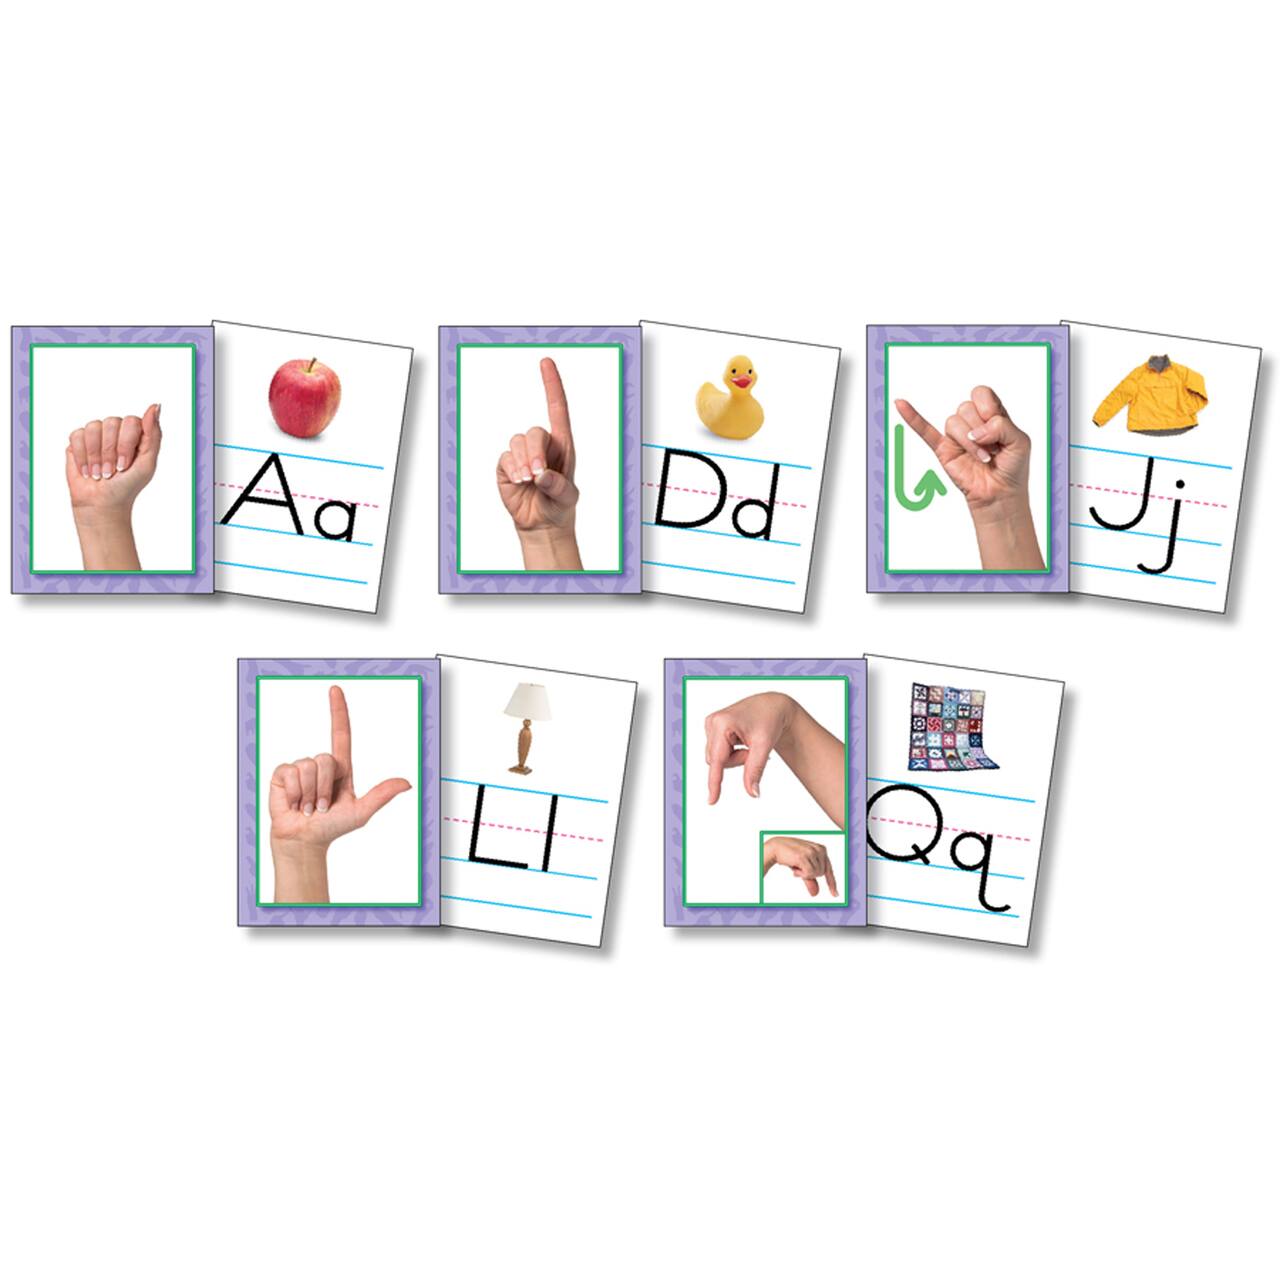 American Sign Language Card Set